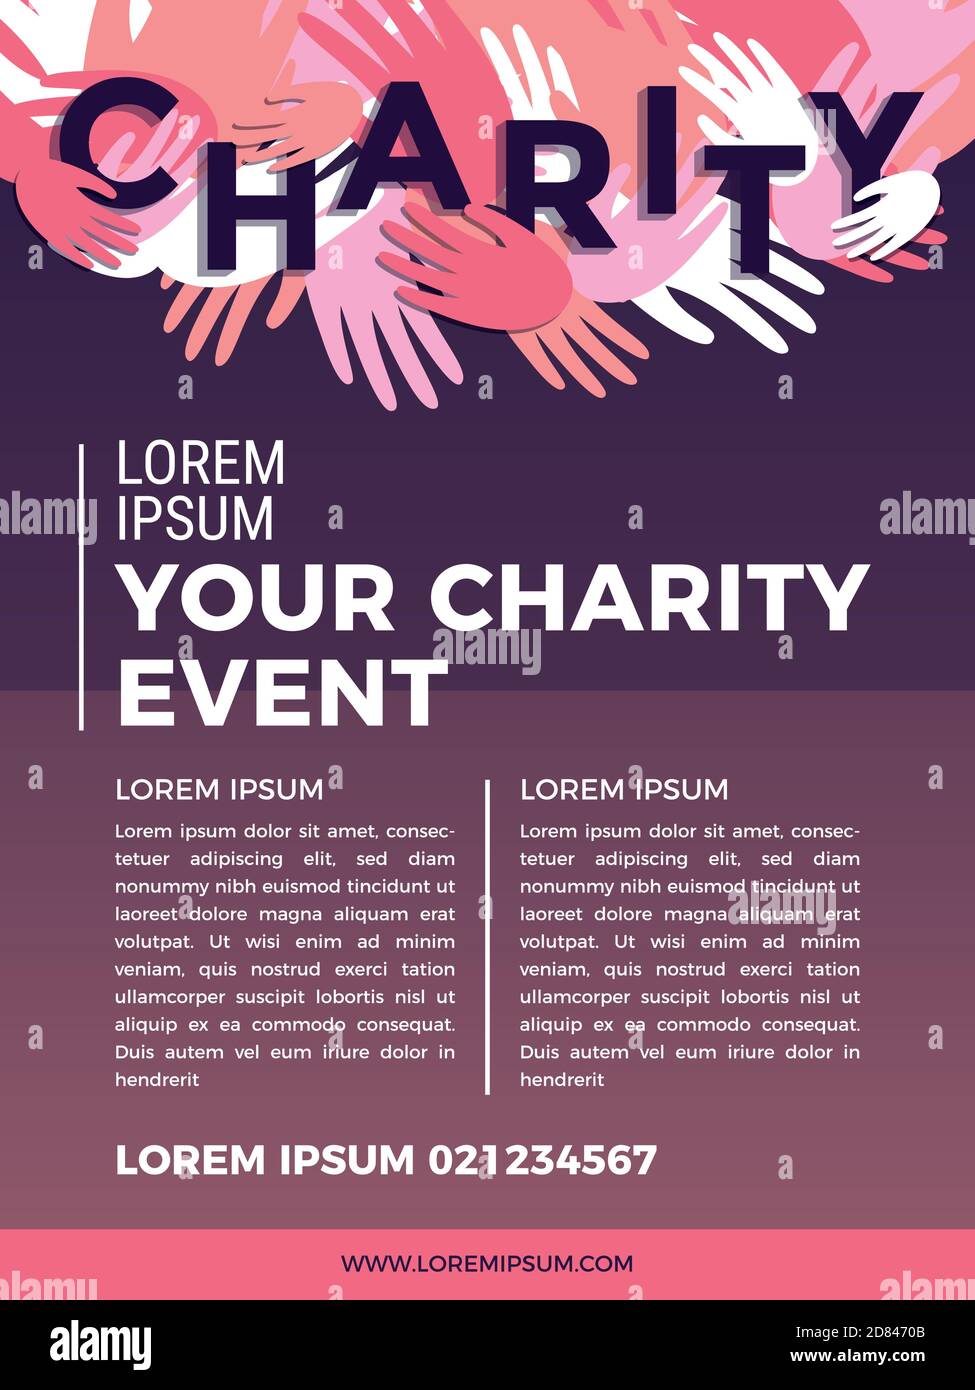 Charity und Spende Poster Design-Vorlagen. Kartenflyer Poster mit Ihrem Text für Freiwilligenzentrum, Fundraising-Veranstaltung, Organisation. Vektorgrafik Stock Vektor